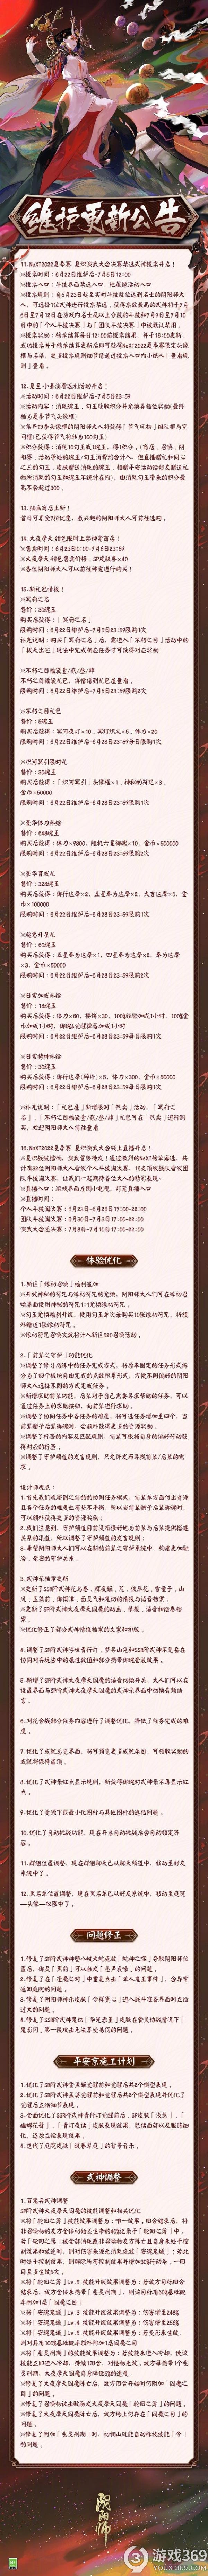 阴阳师正式服6月22日更新什么 阴阳师正式服6月22日更新内容